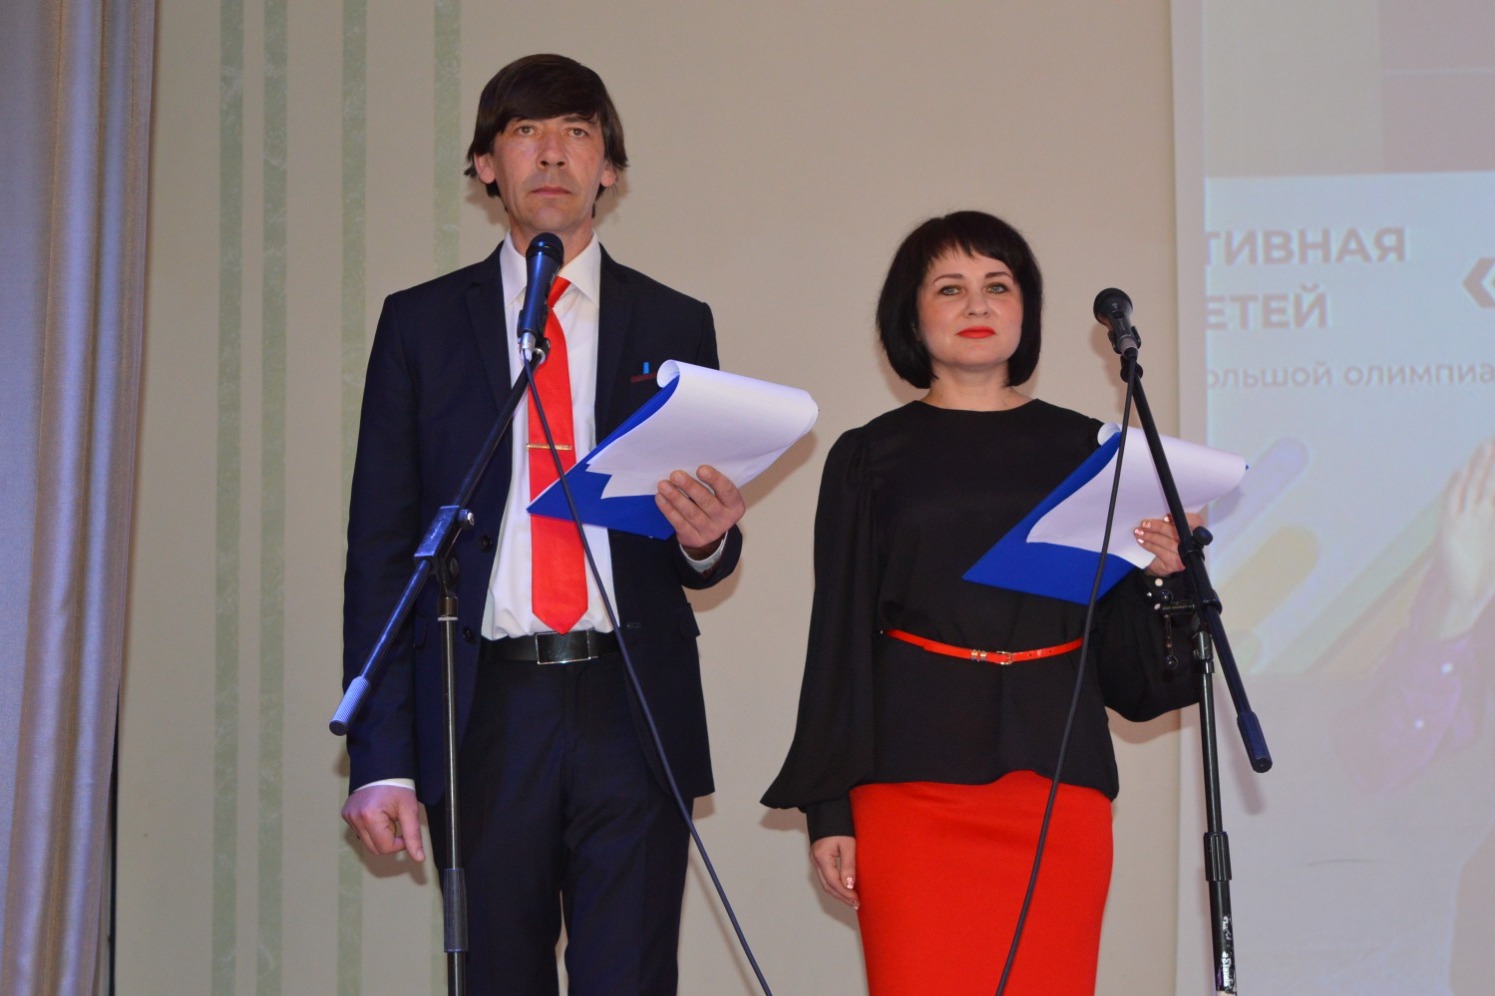 Ведущие церемонии Андрей Максимов и Юлия Арцыбашева